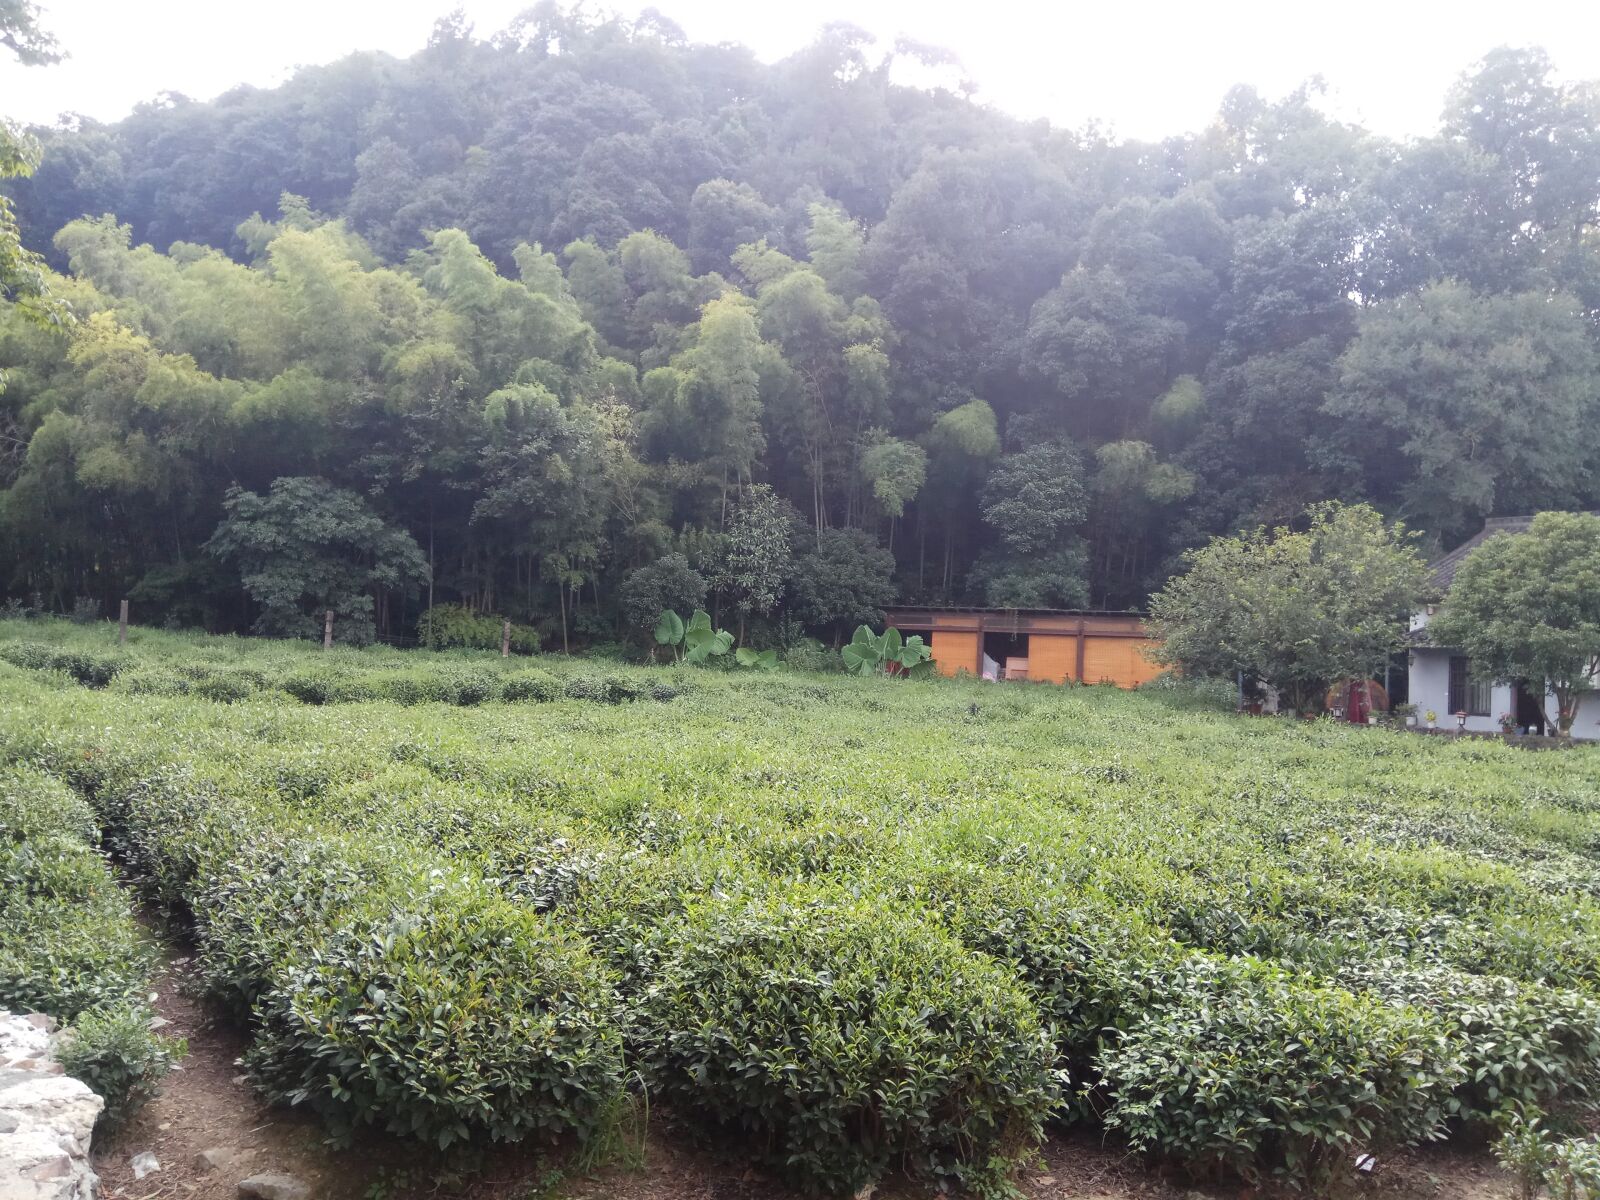 Xiaomi Redmi Note 4X sample photo. Tea plantation, xihu, hangzhou photography